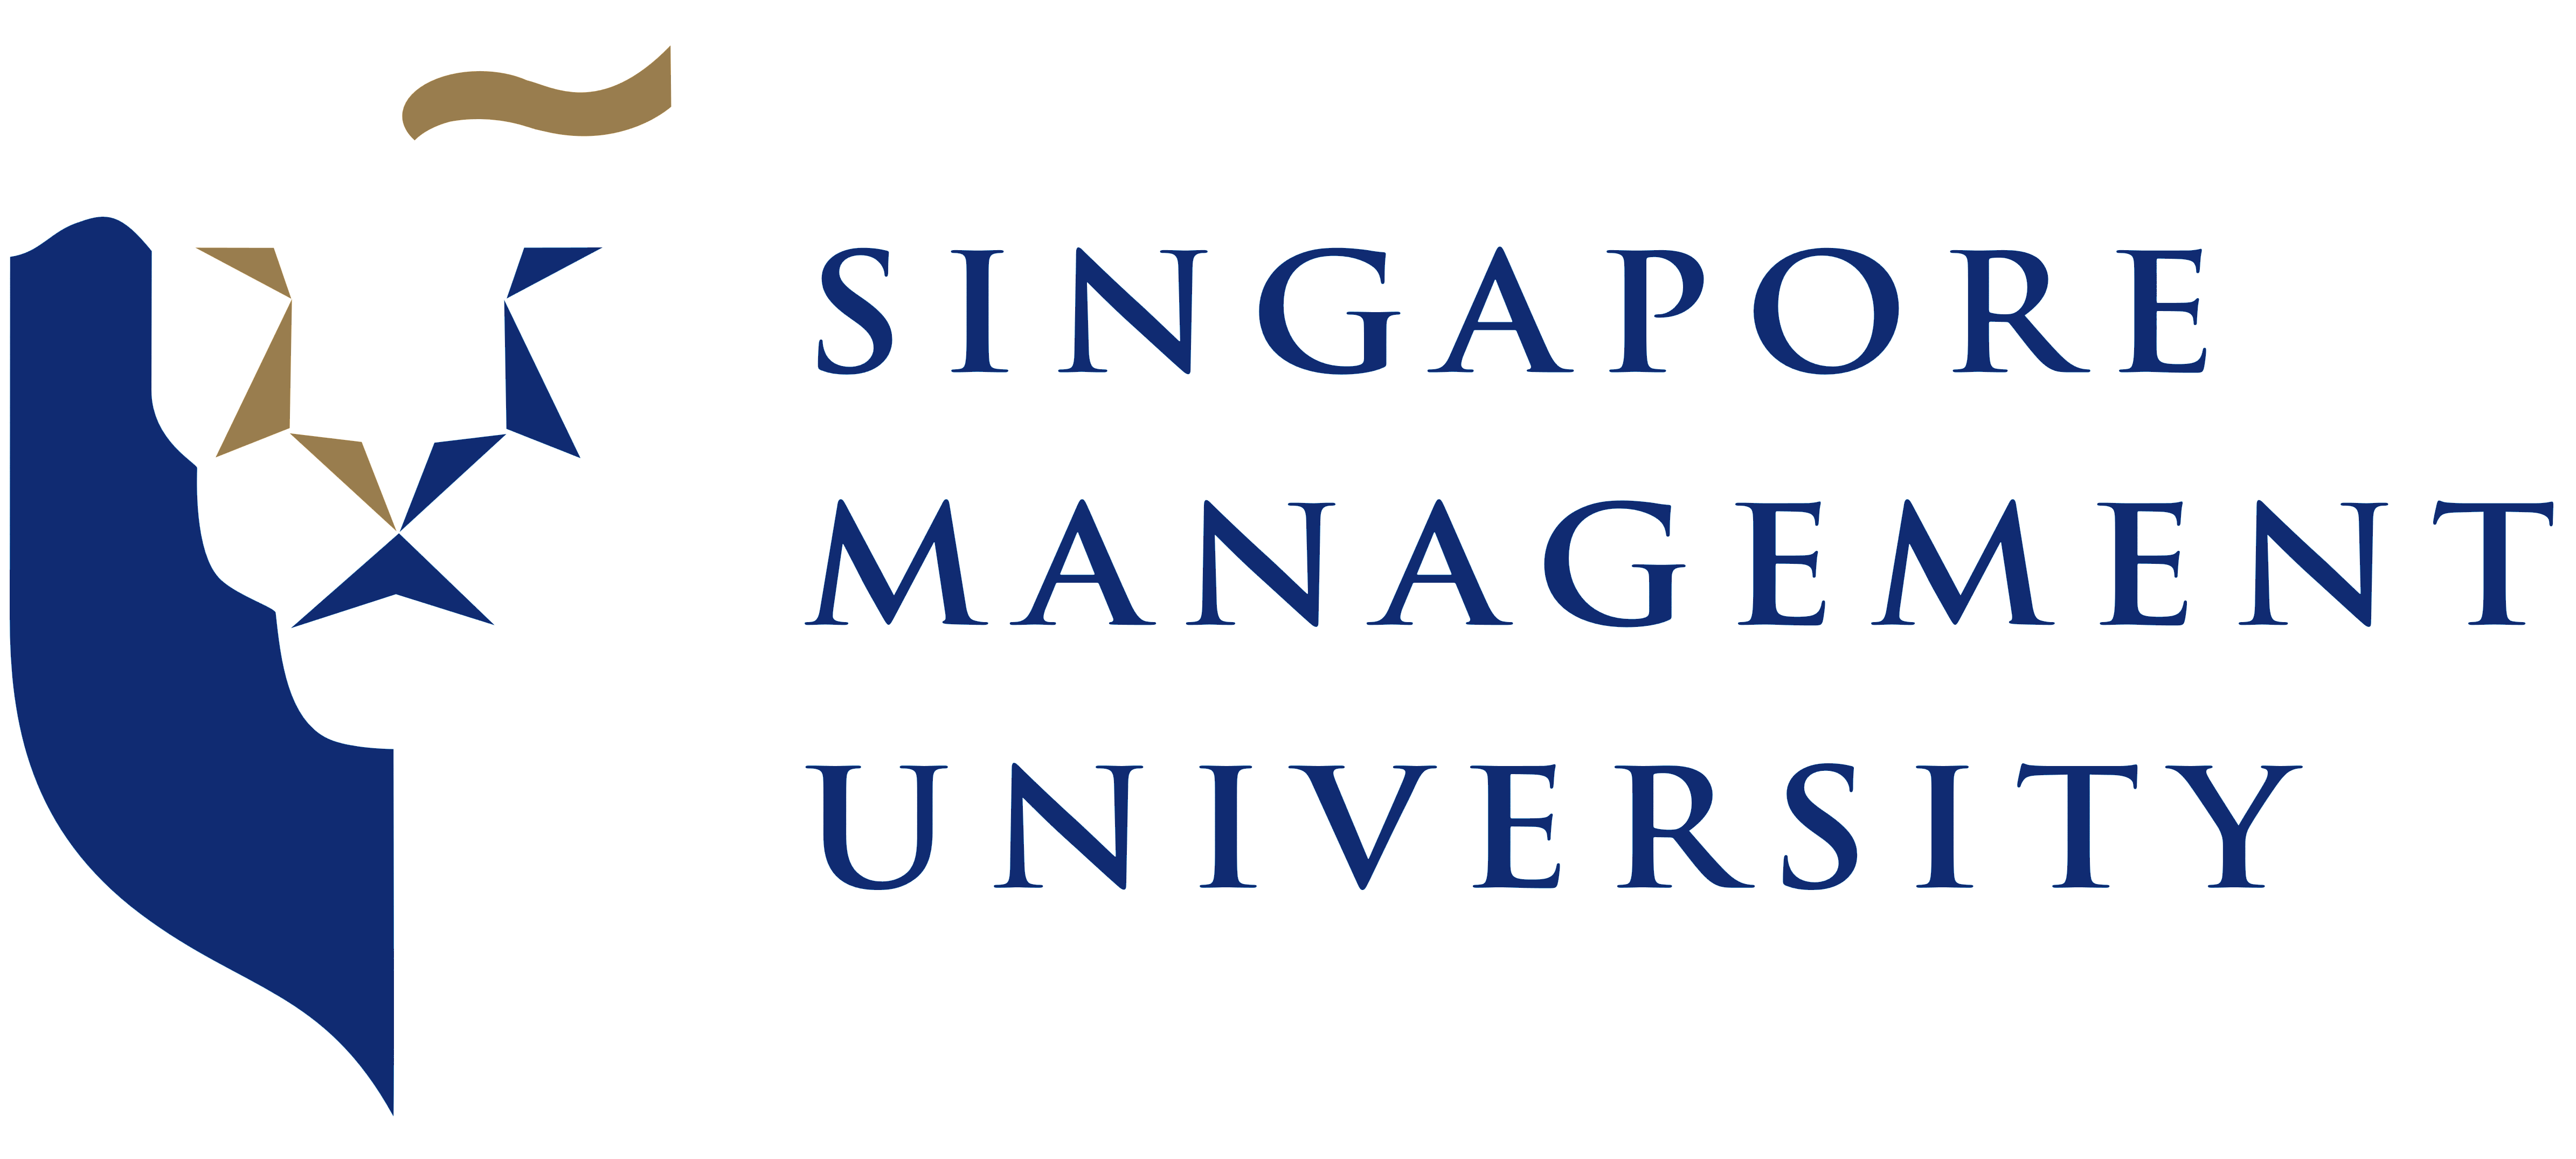 Singapore_Management_University_logo_SMU